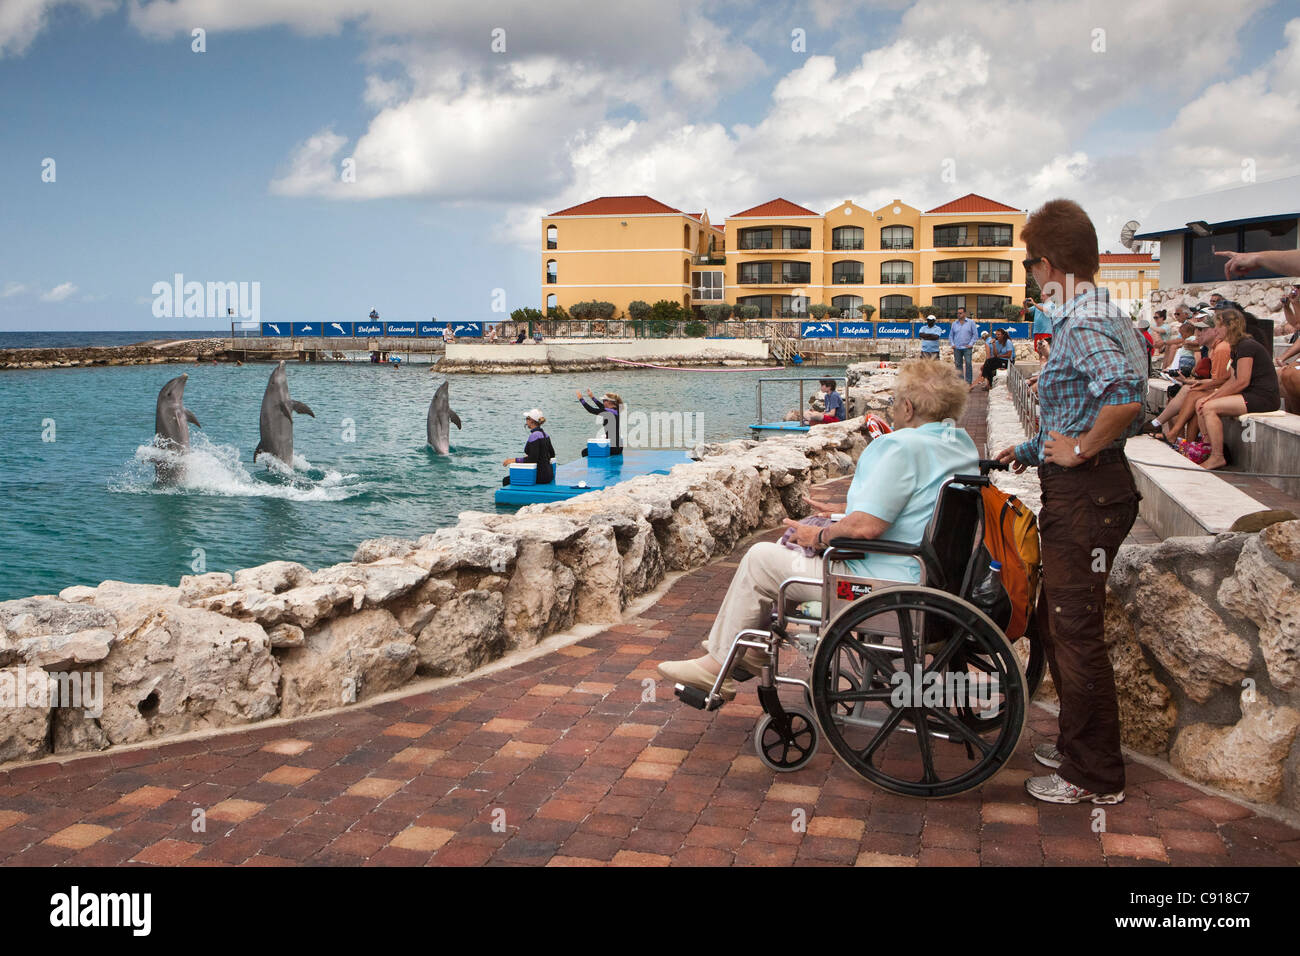 Curaçao, île des Caraïbes, indépendante des Pays-Bas depuis 2010. Willemstad. L'Aquarium de mer. Spectacle de dauphins. Banque D'Images